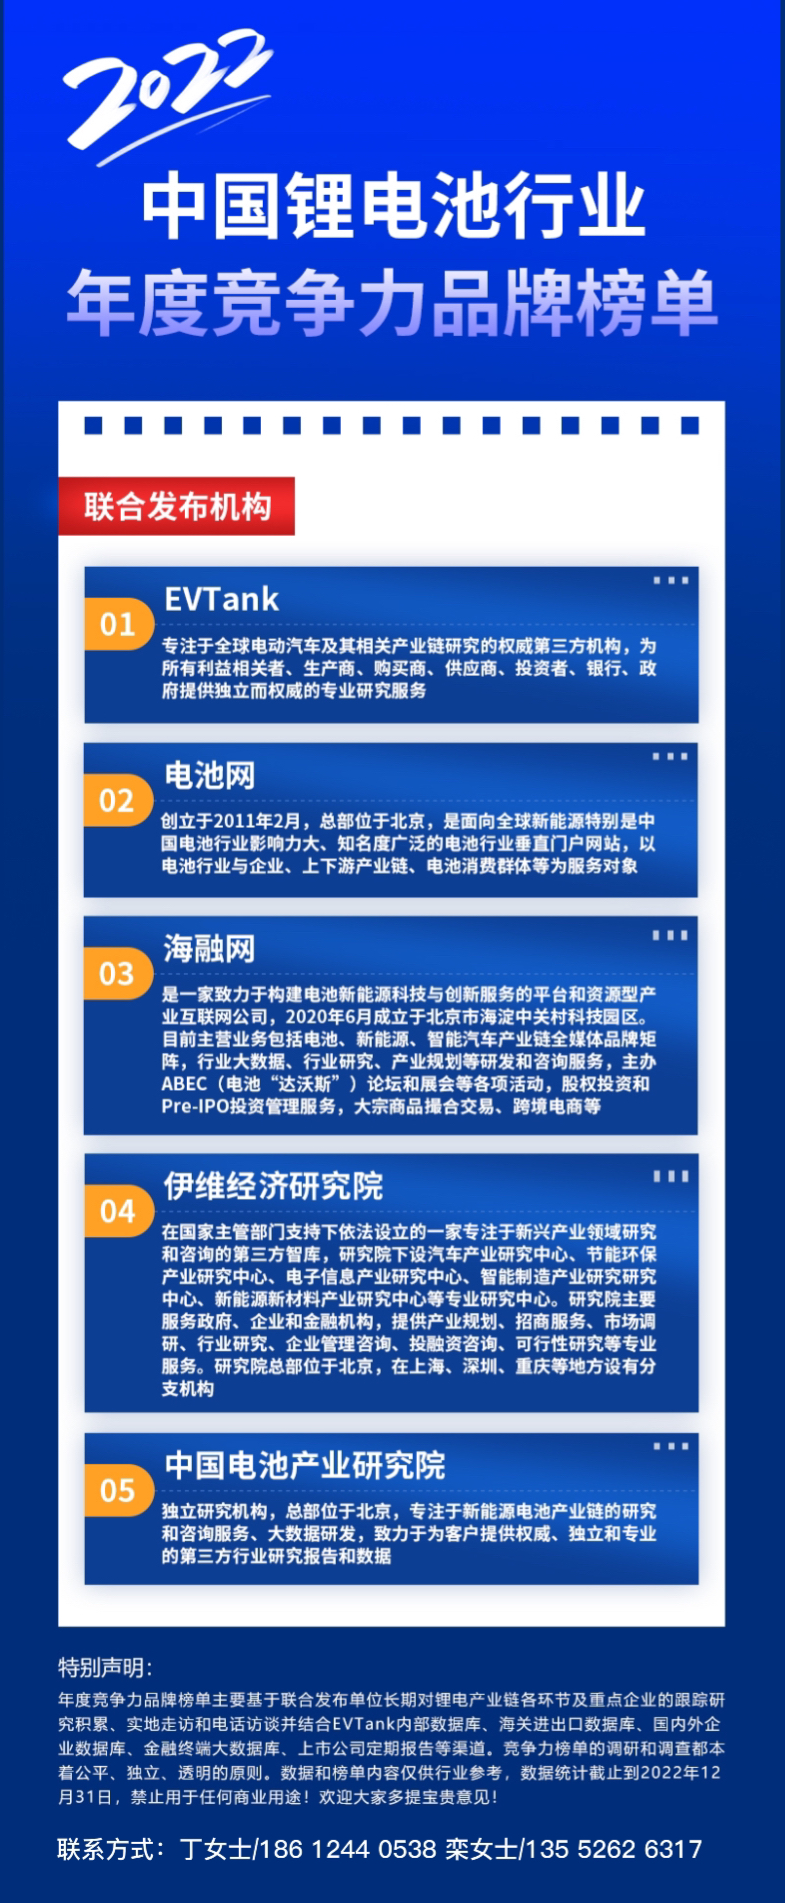 2022年中国锂电池行业动力电池年度竞争力品牌榜单.jpg